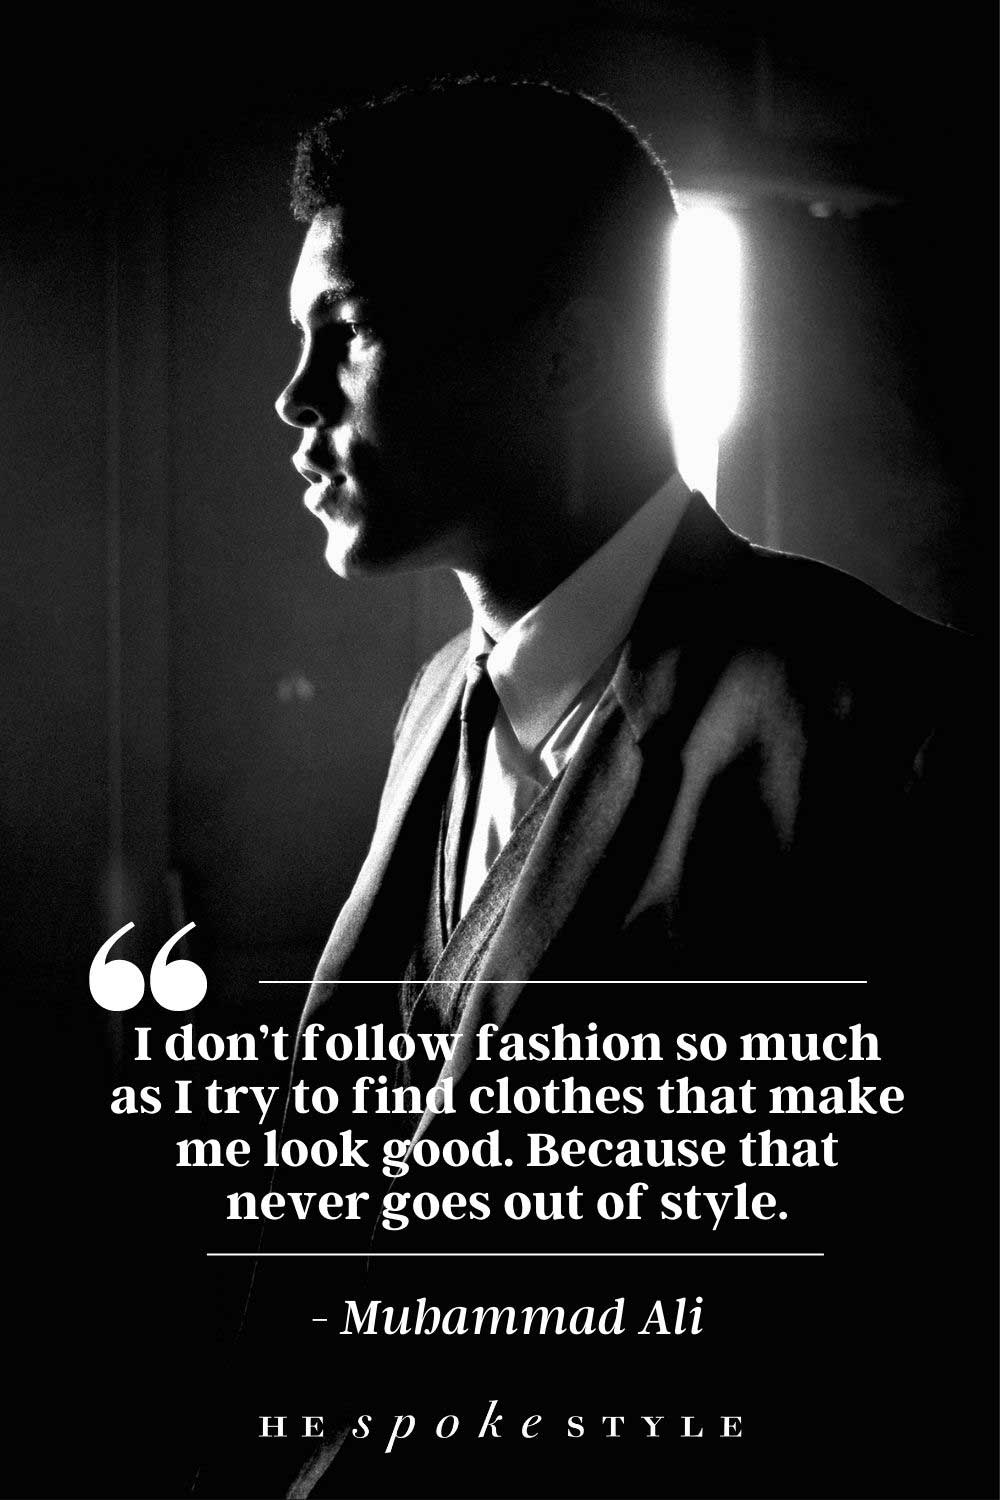 Muhammad Ali fashion quote